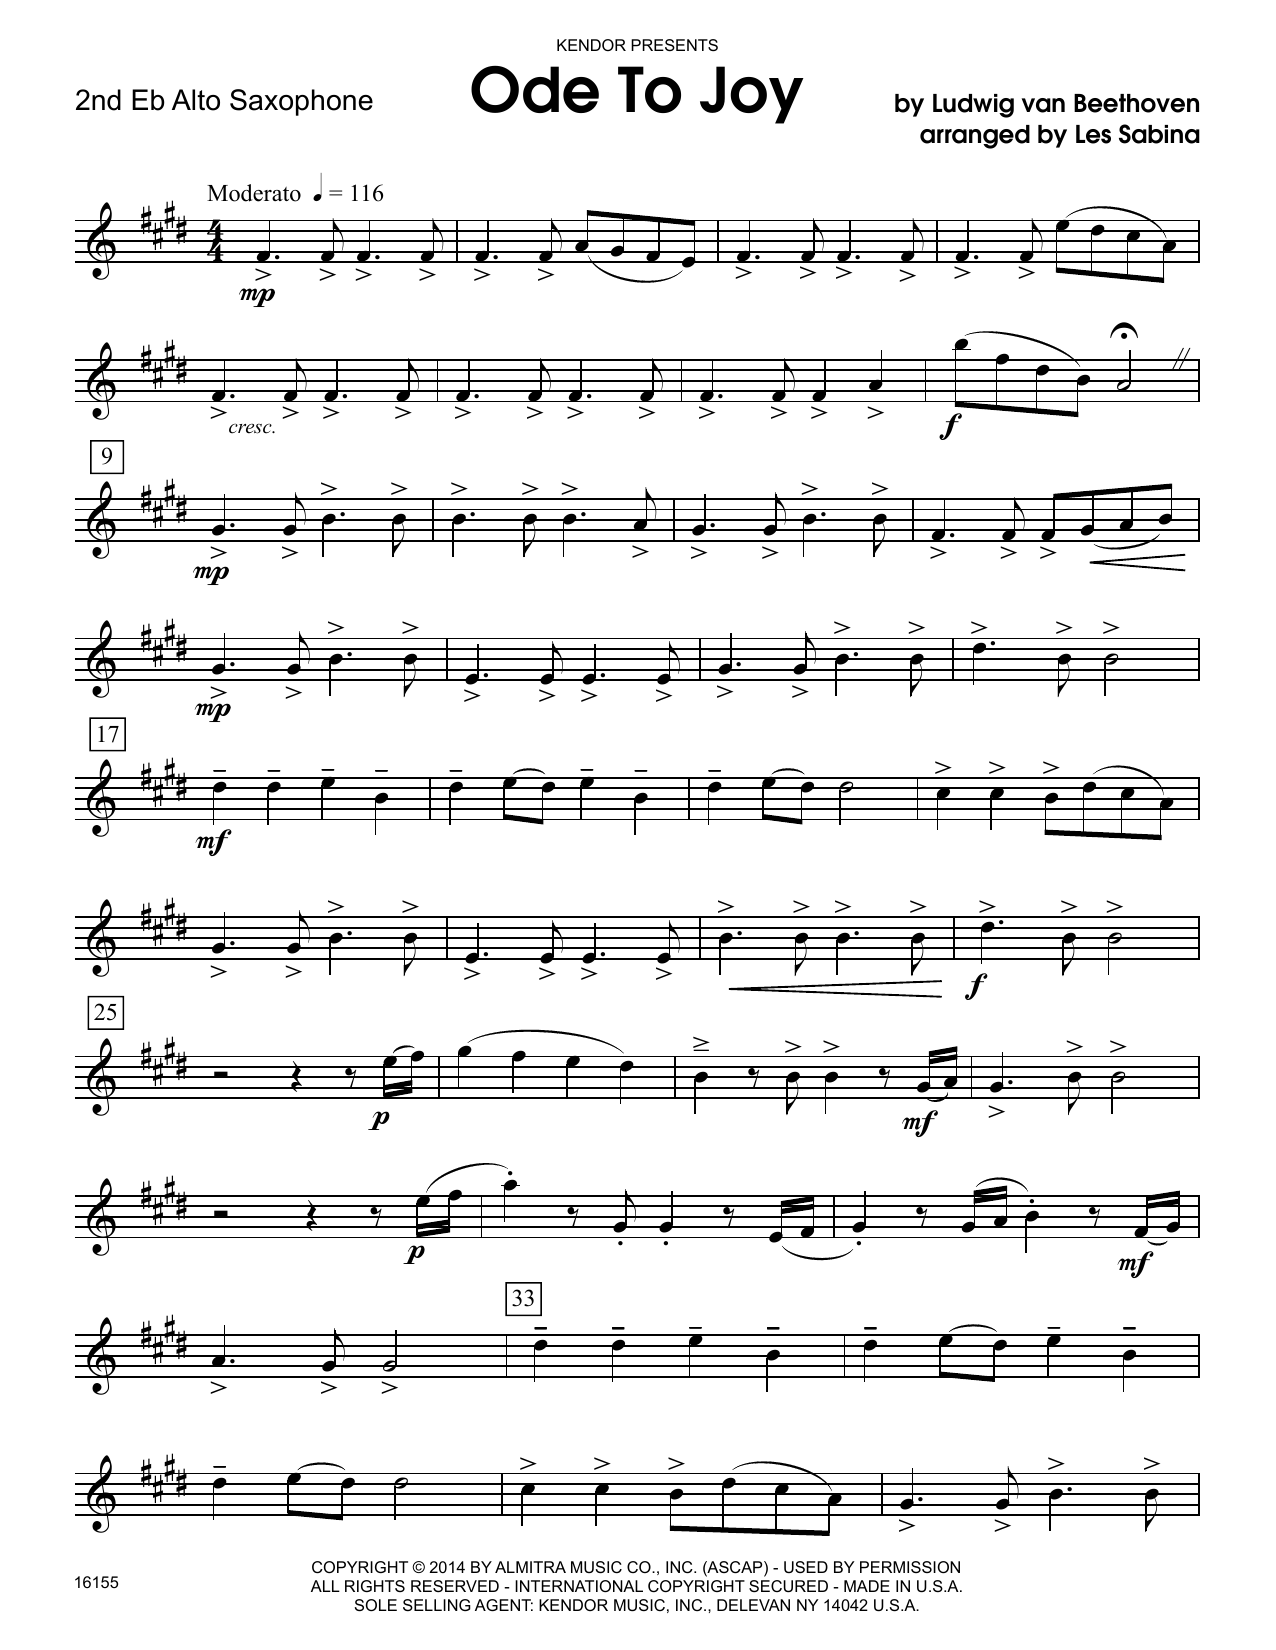 Download Les Sabina Ode To Joy - 2nd Eb Alto Saxophone Sheet Music